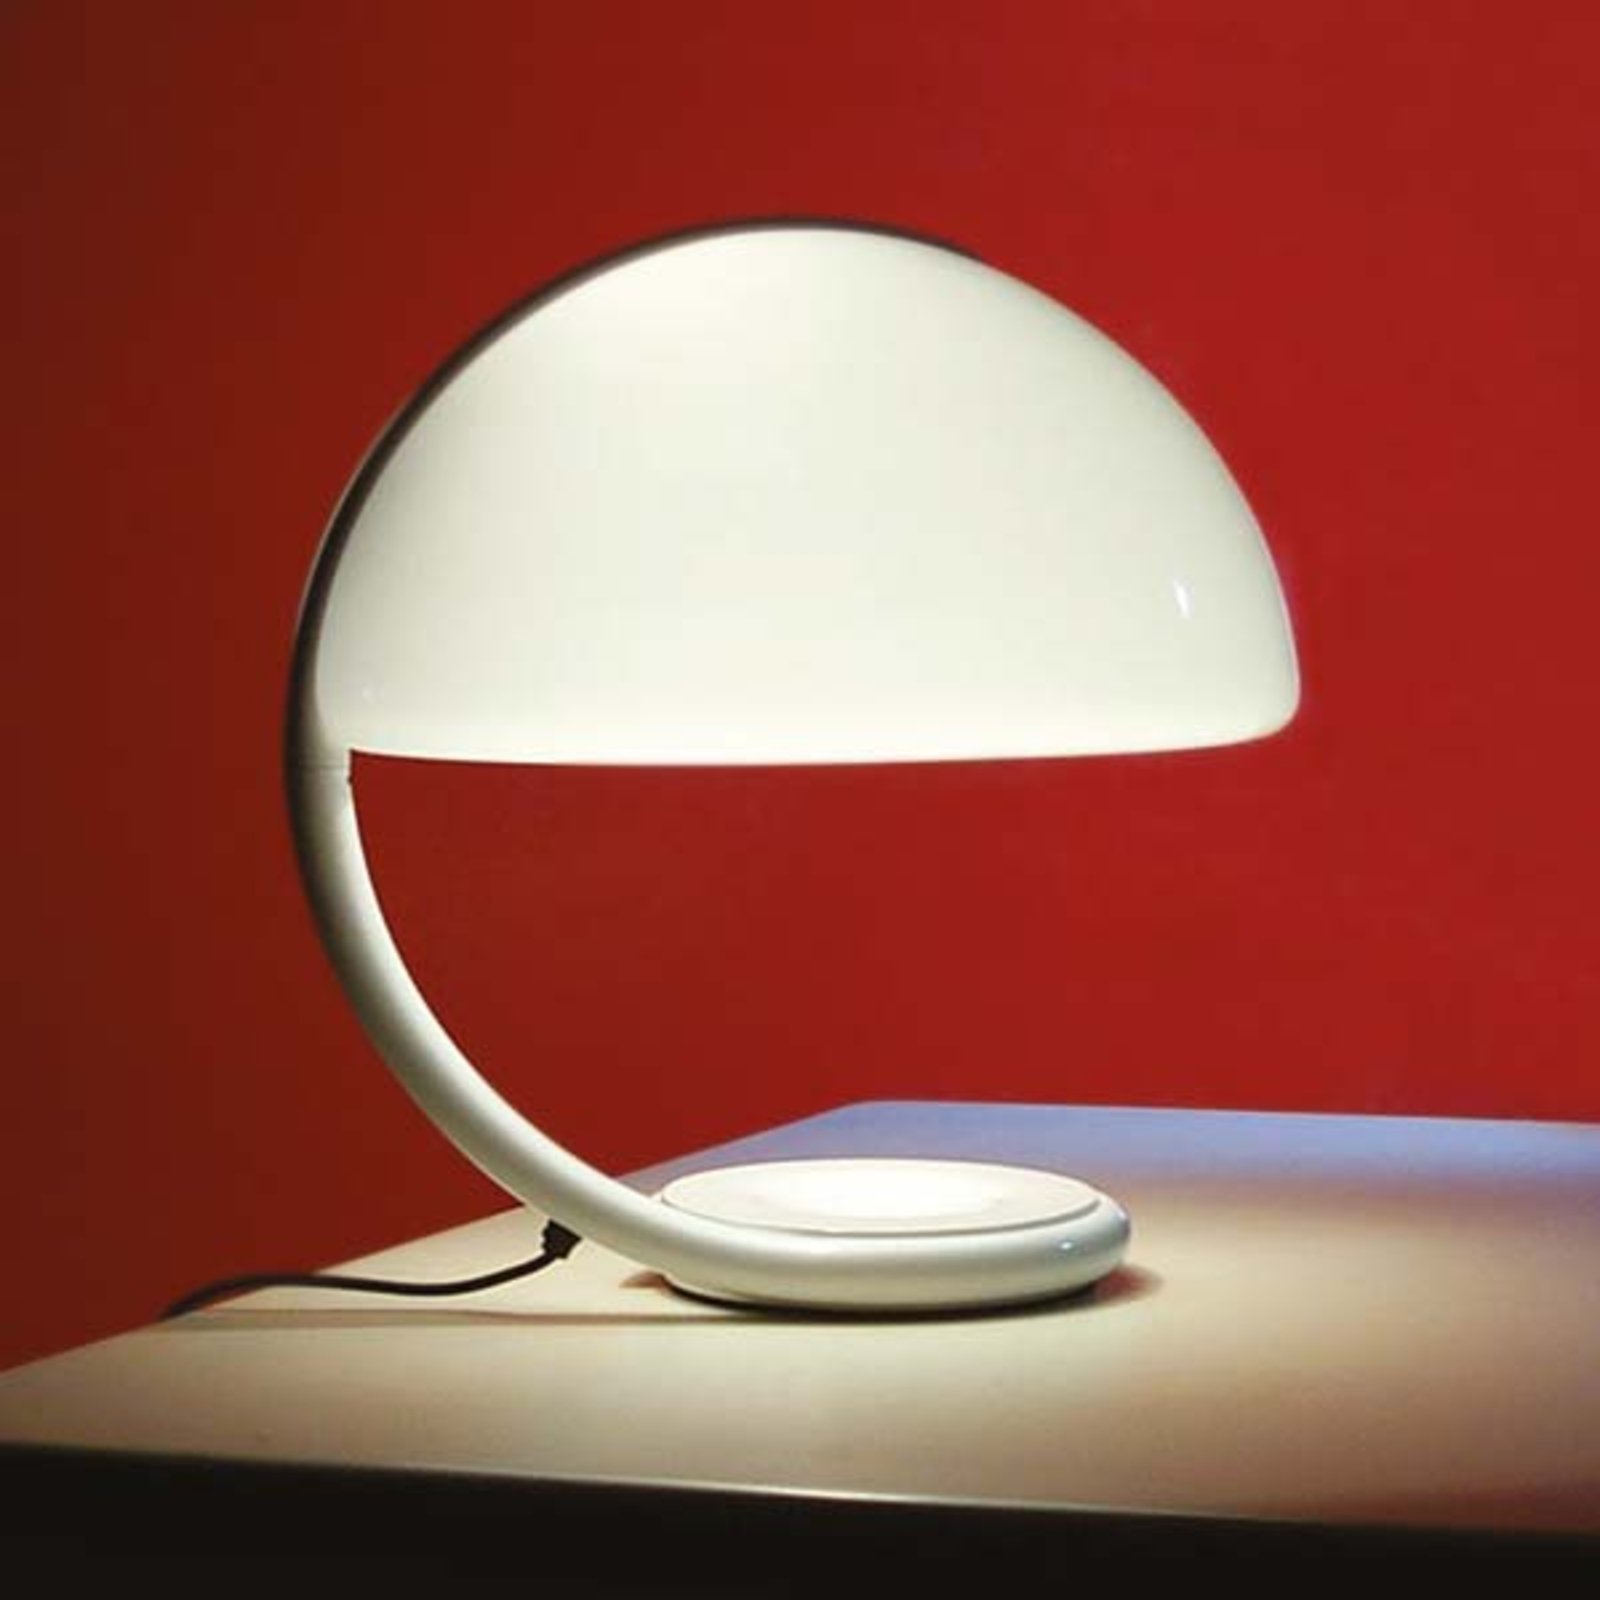 Martinelli Luce Serpente - asztali lámpa, fehér